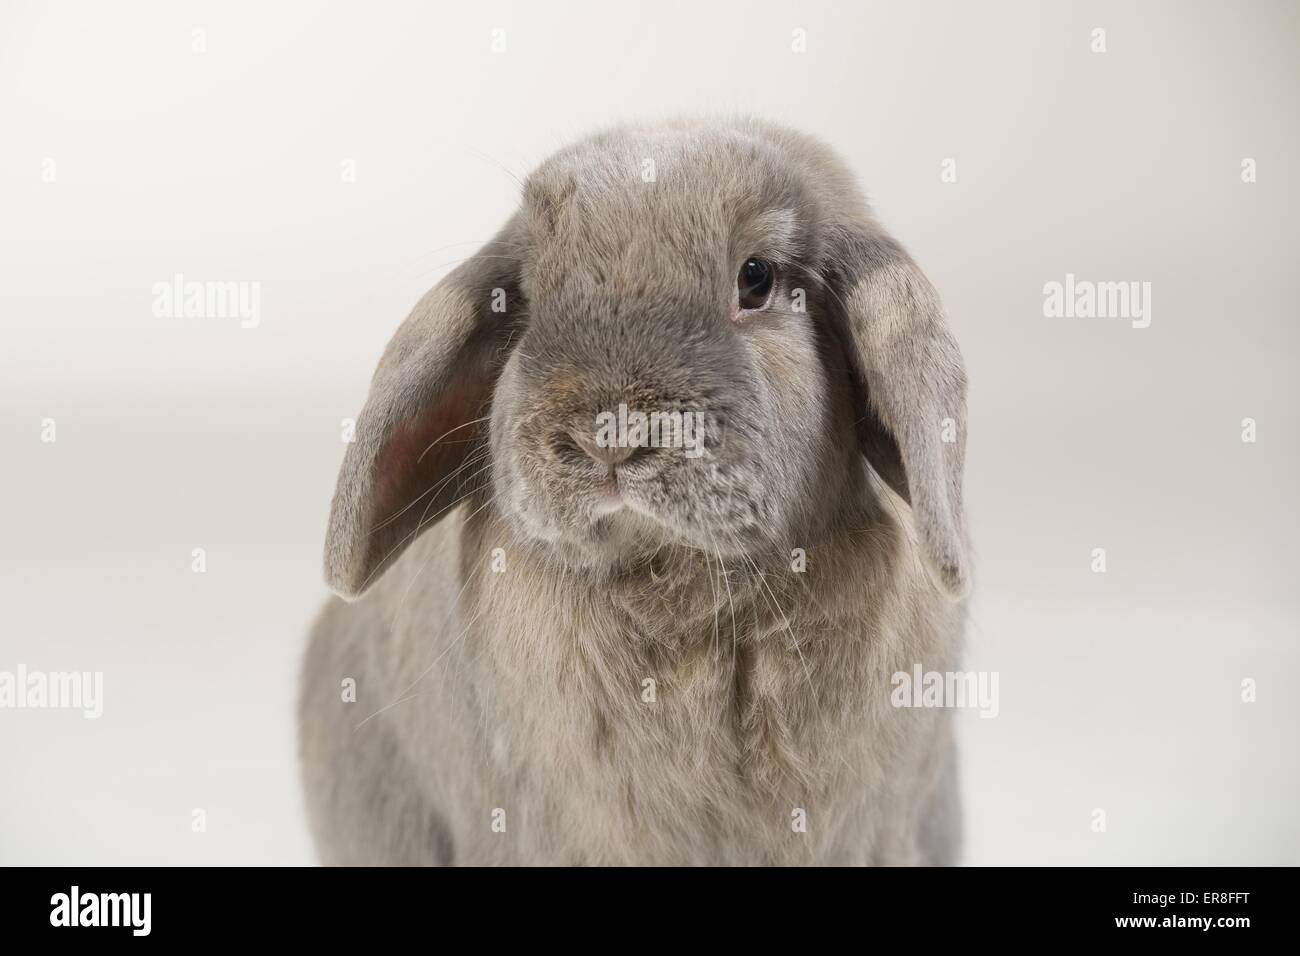 Lop-eared rabbit Banque D'Images